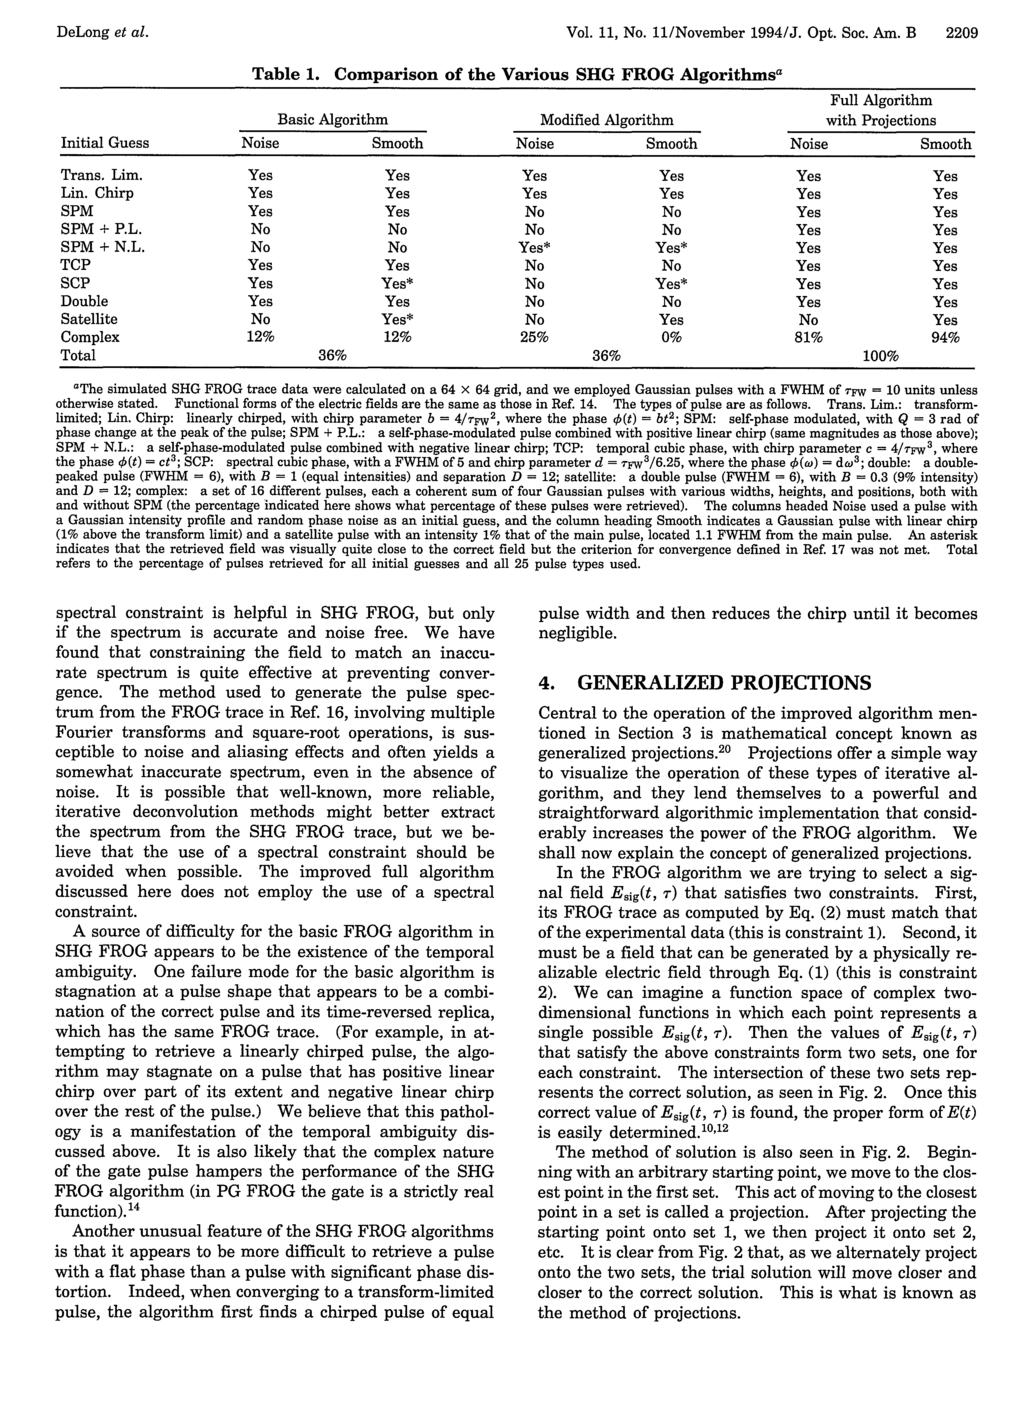 DeLong et al. Vol. 11, No. 11/November 1994/J. Opt. Soc. Am. B 2209 Table 1.